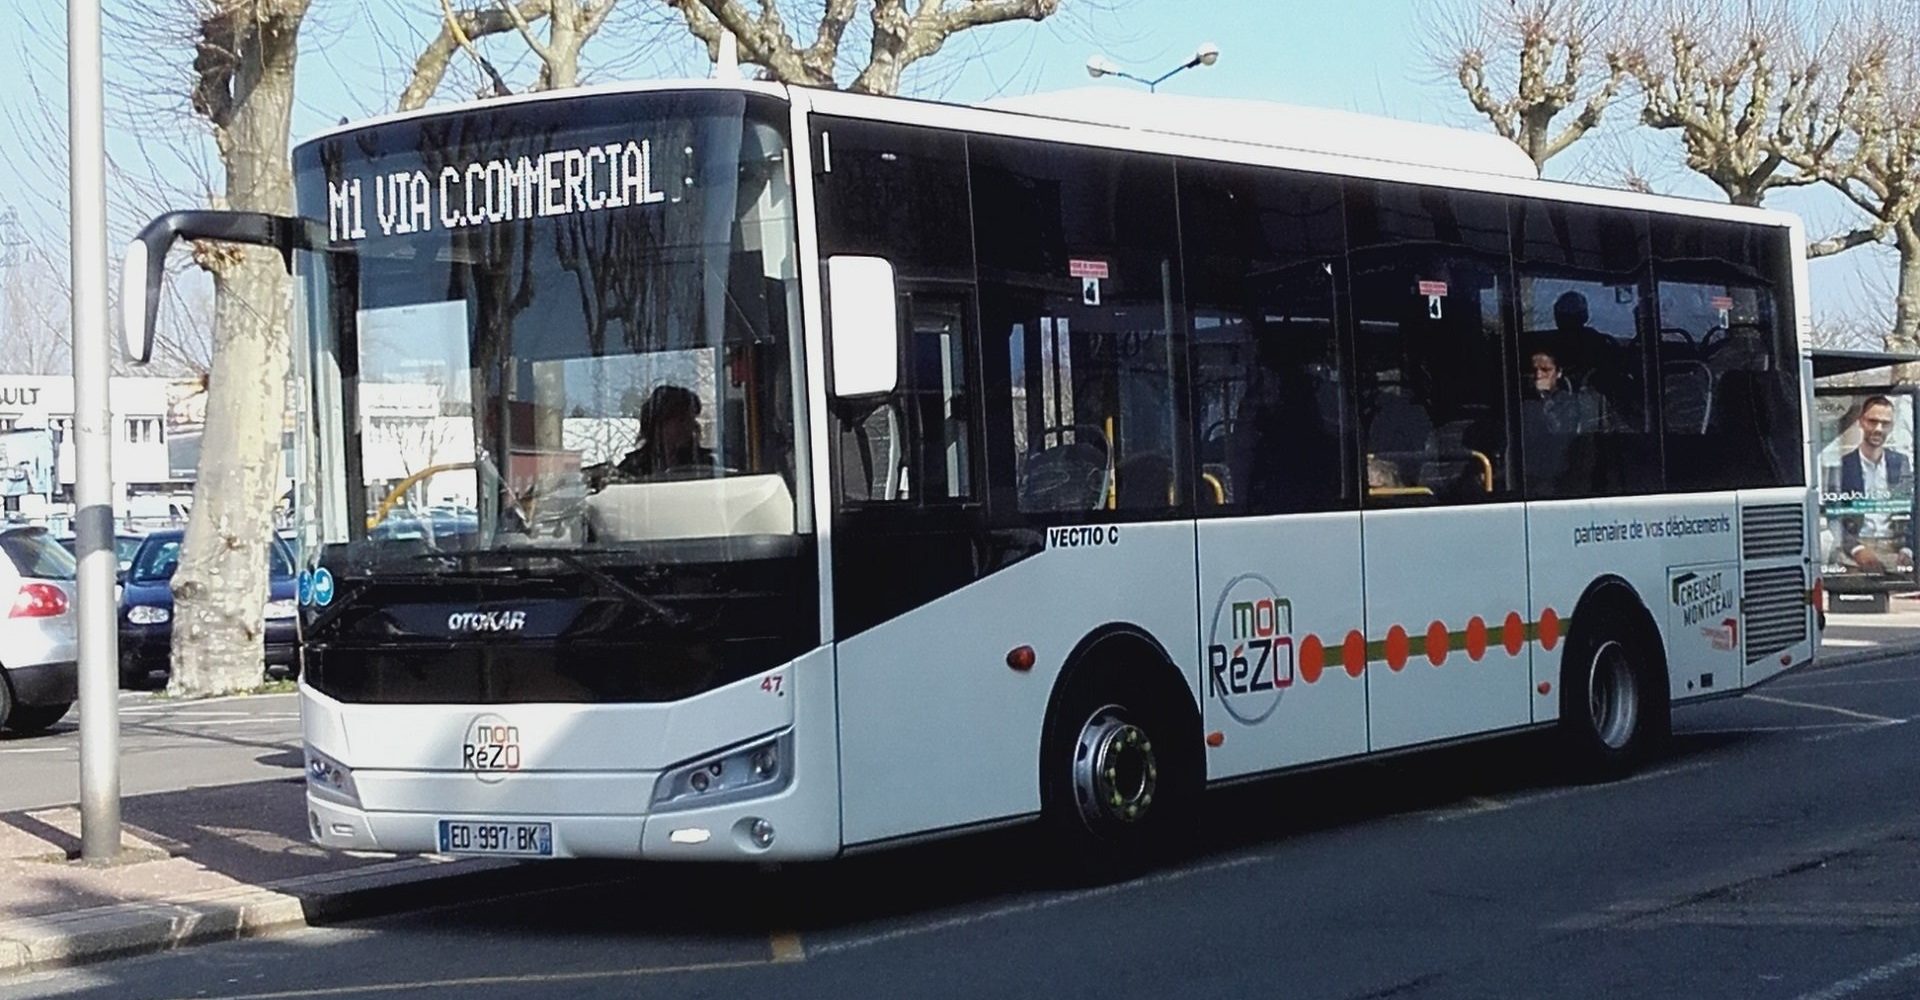 Transdev réseau urbain transport public monRézo Creusot Montceau mobilité déplacement bus